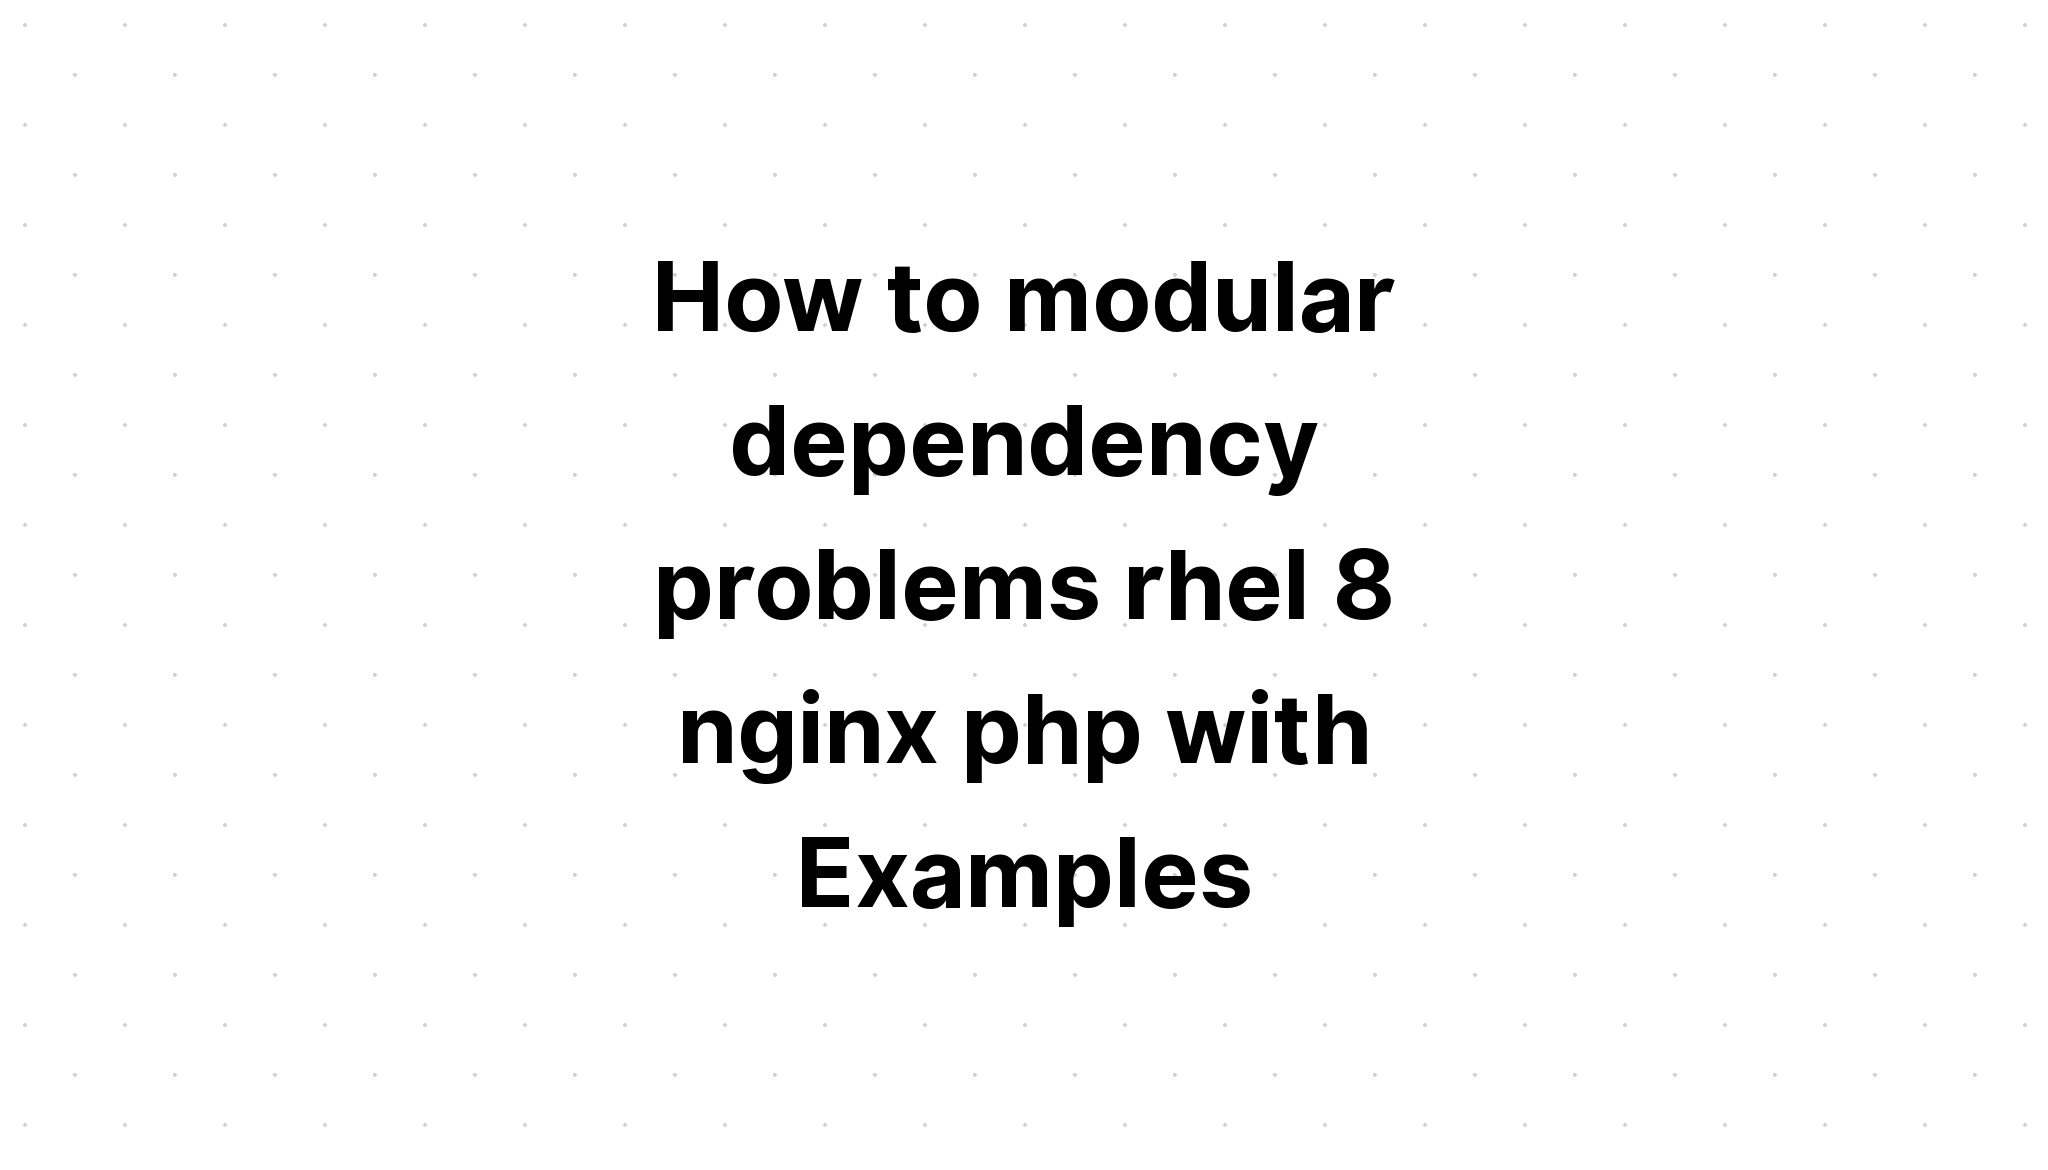 Cách giải quyết các vấn đề phụ thuộc mô-đun rhel 8 nginx php với các ví dụ